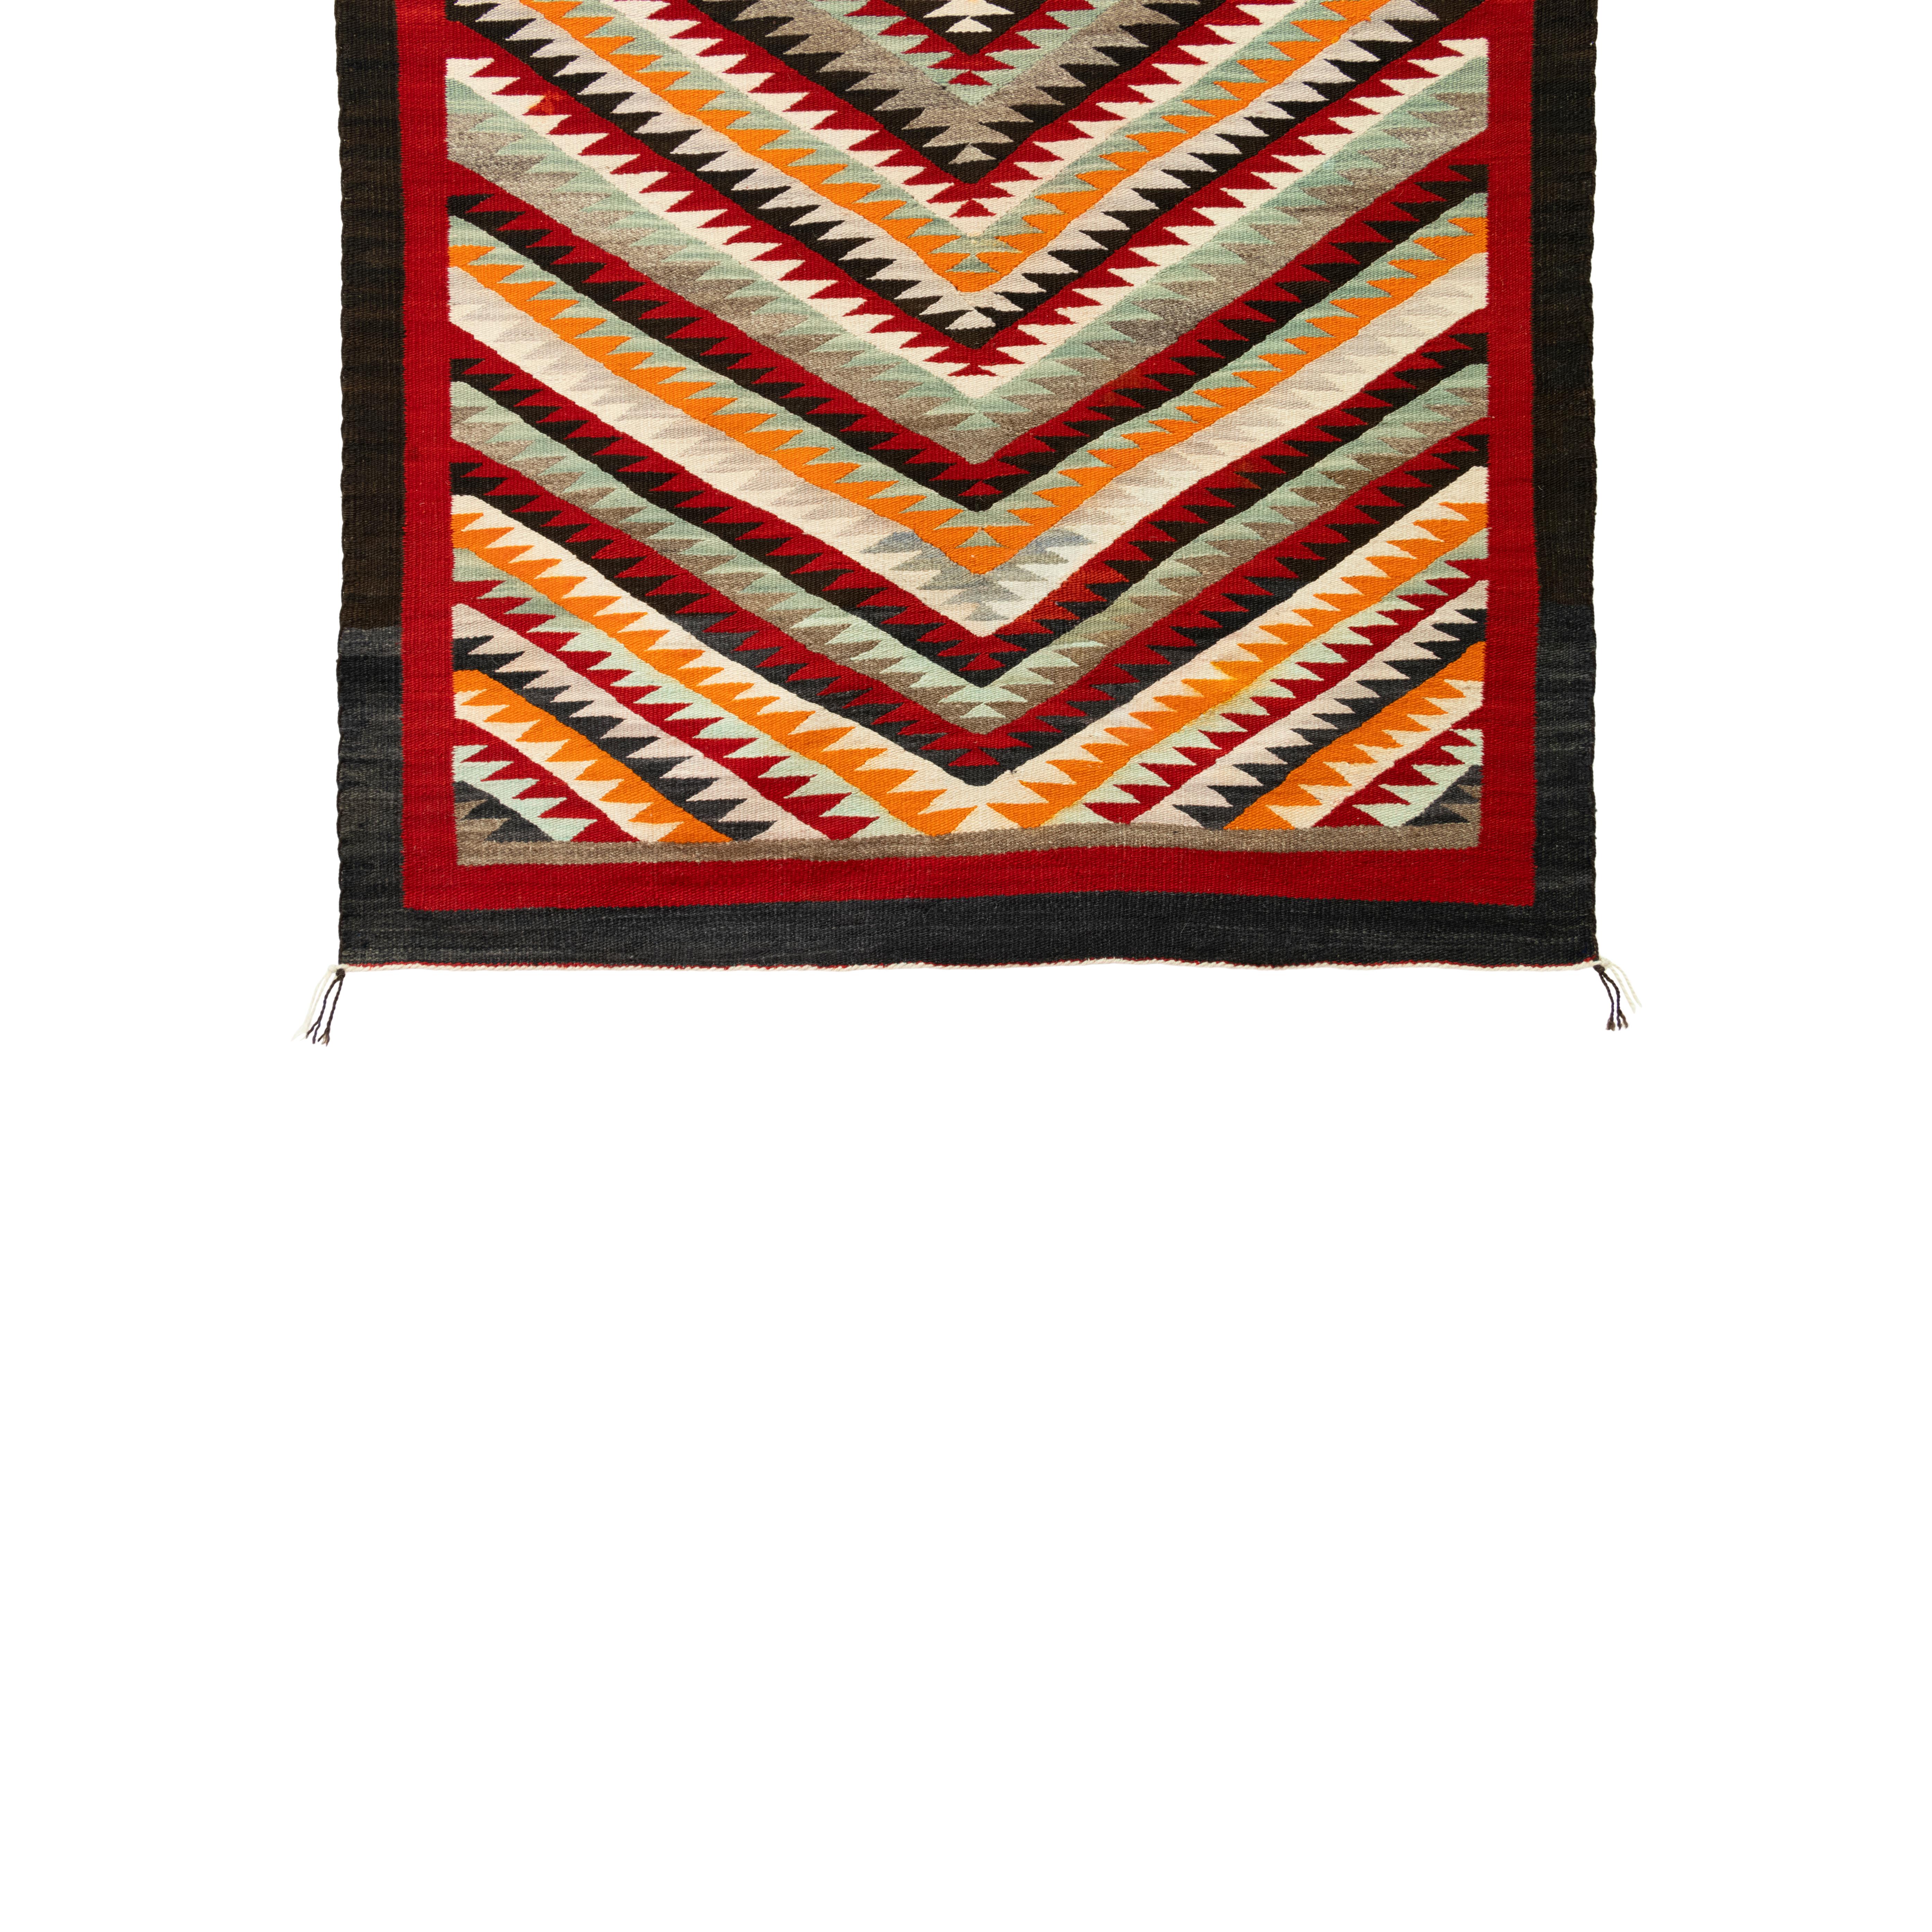 Red mesa saddle blanket/floor weaving. Measures: 3'4